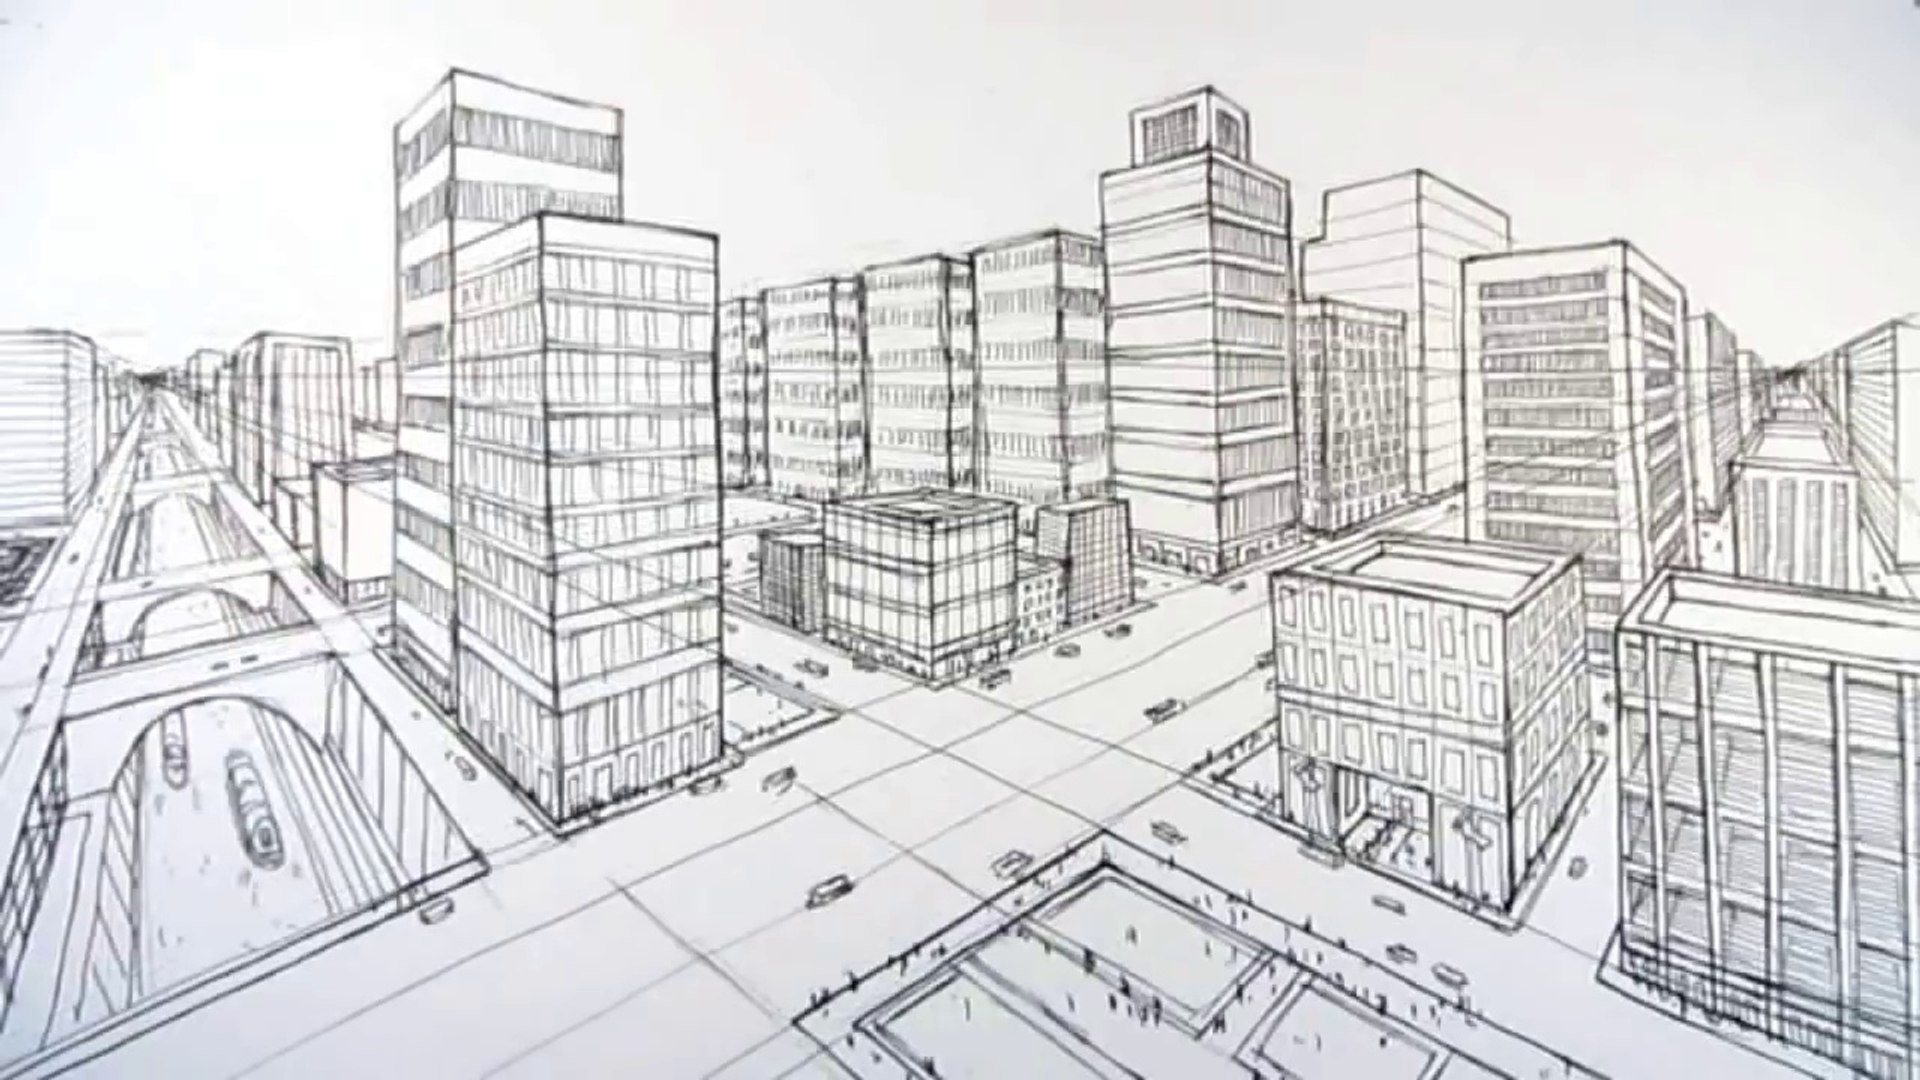 Building the new line. Эскиз современного города. Здания для рисования. Угловая перспектива здания. Рисование зданий в перспективе.